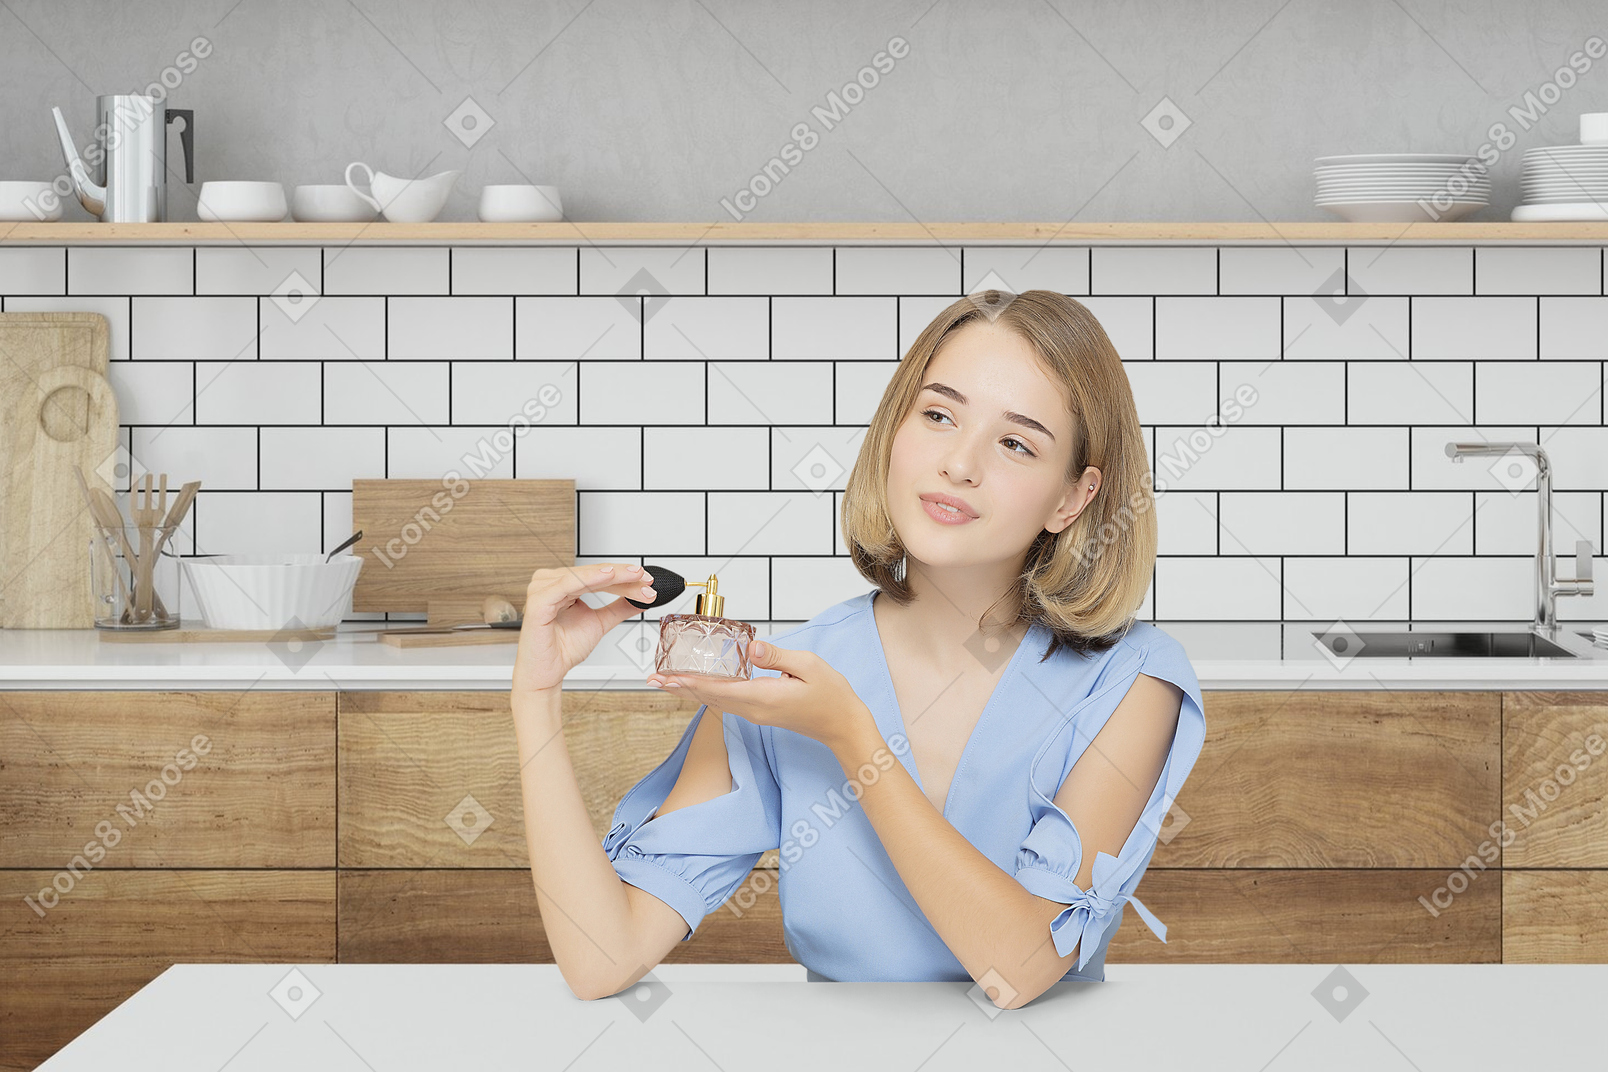 Jovem mulher sentada na cozinha e segurando um frasco de perfume